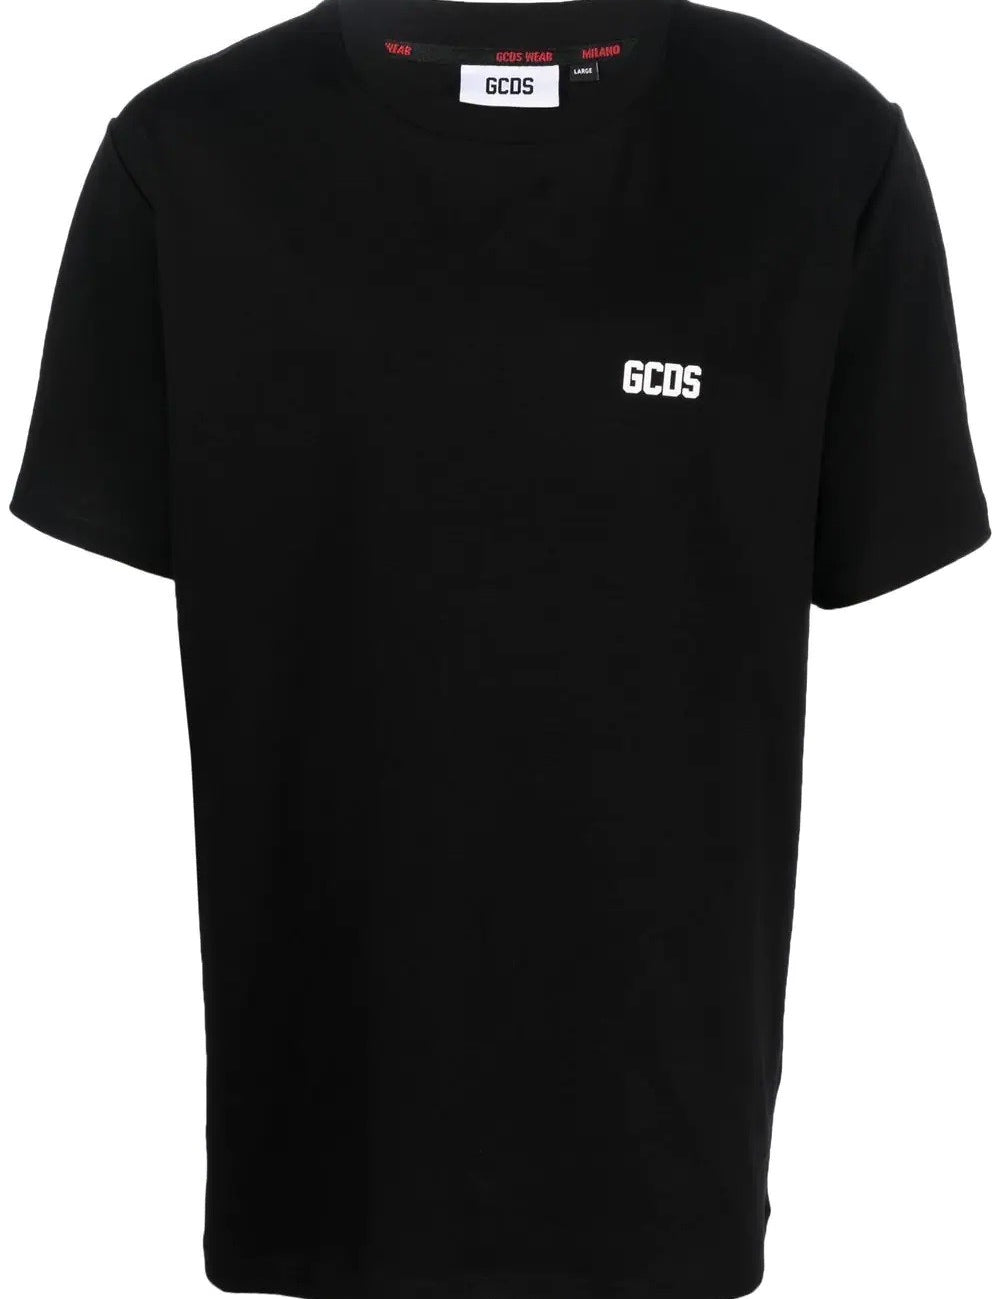 gcds-low-band-regular-t-shirt.jpg